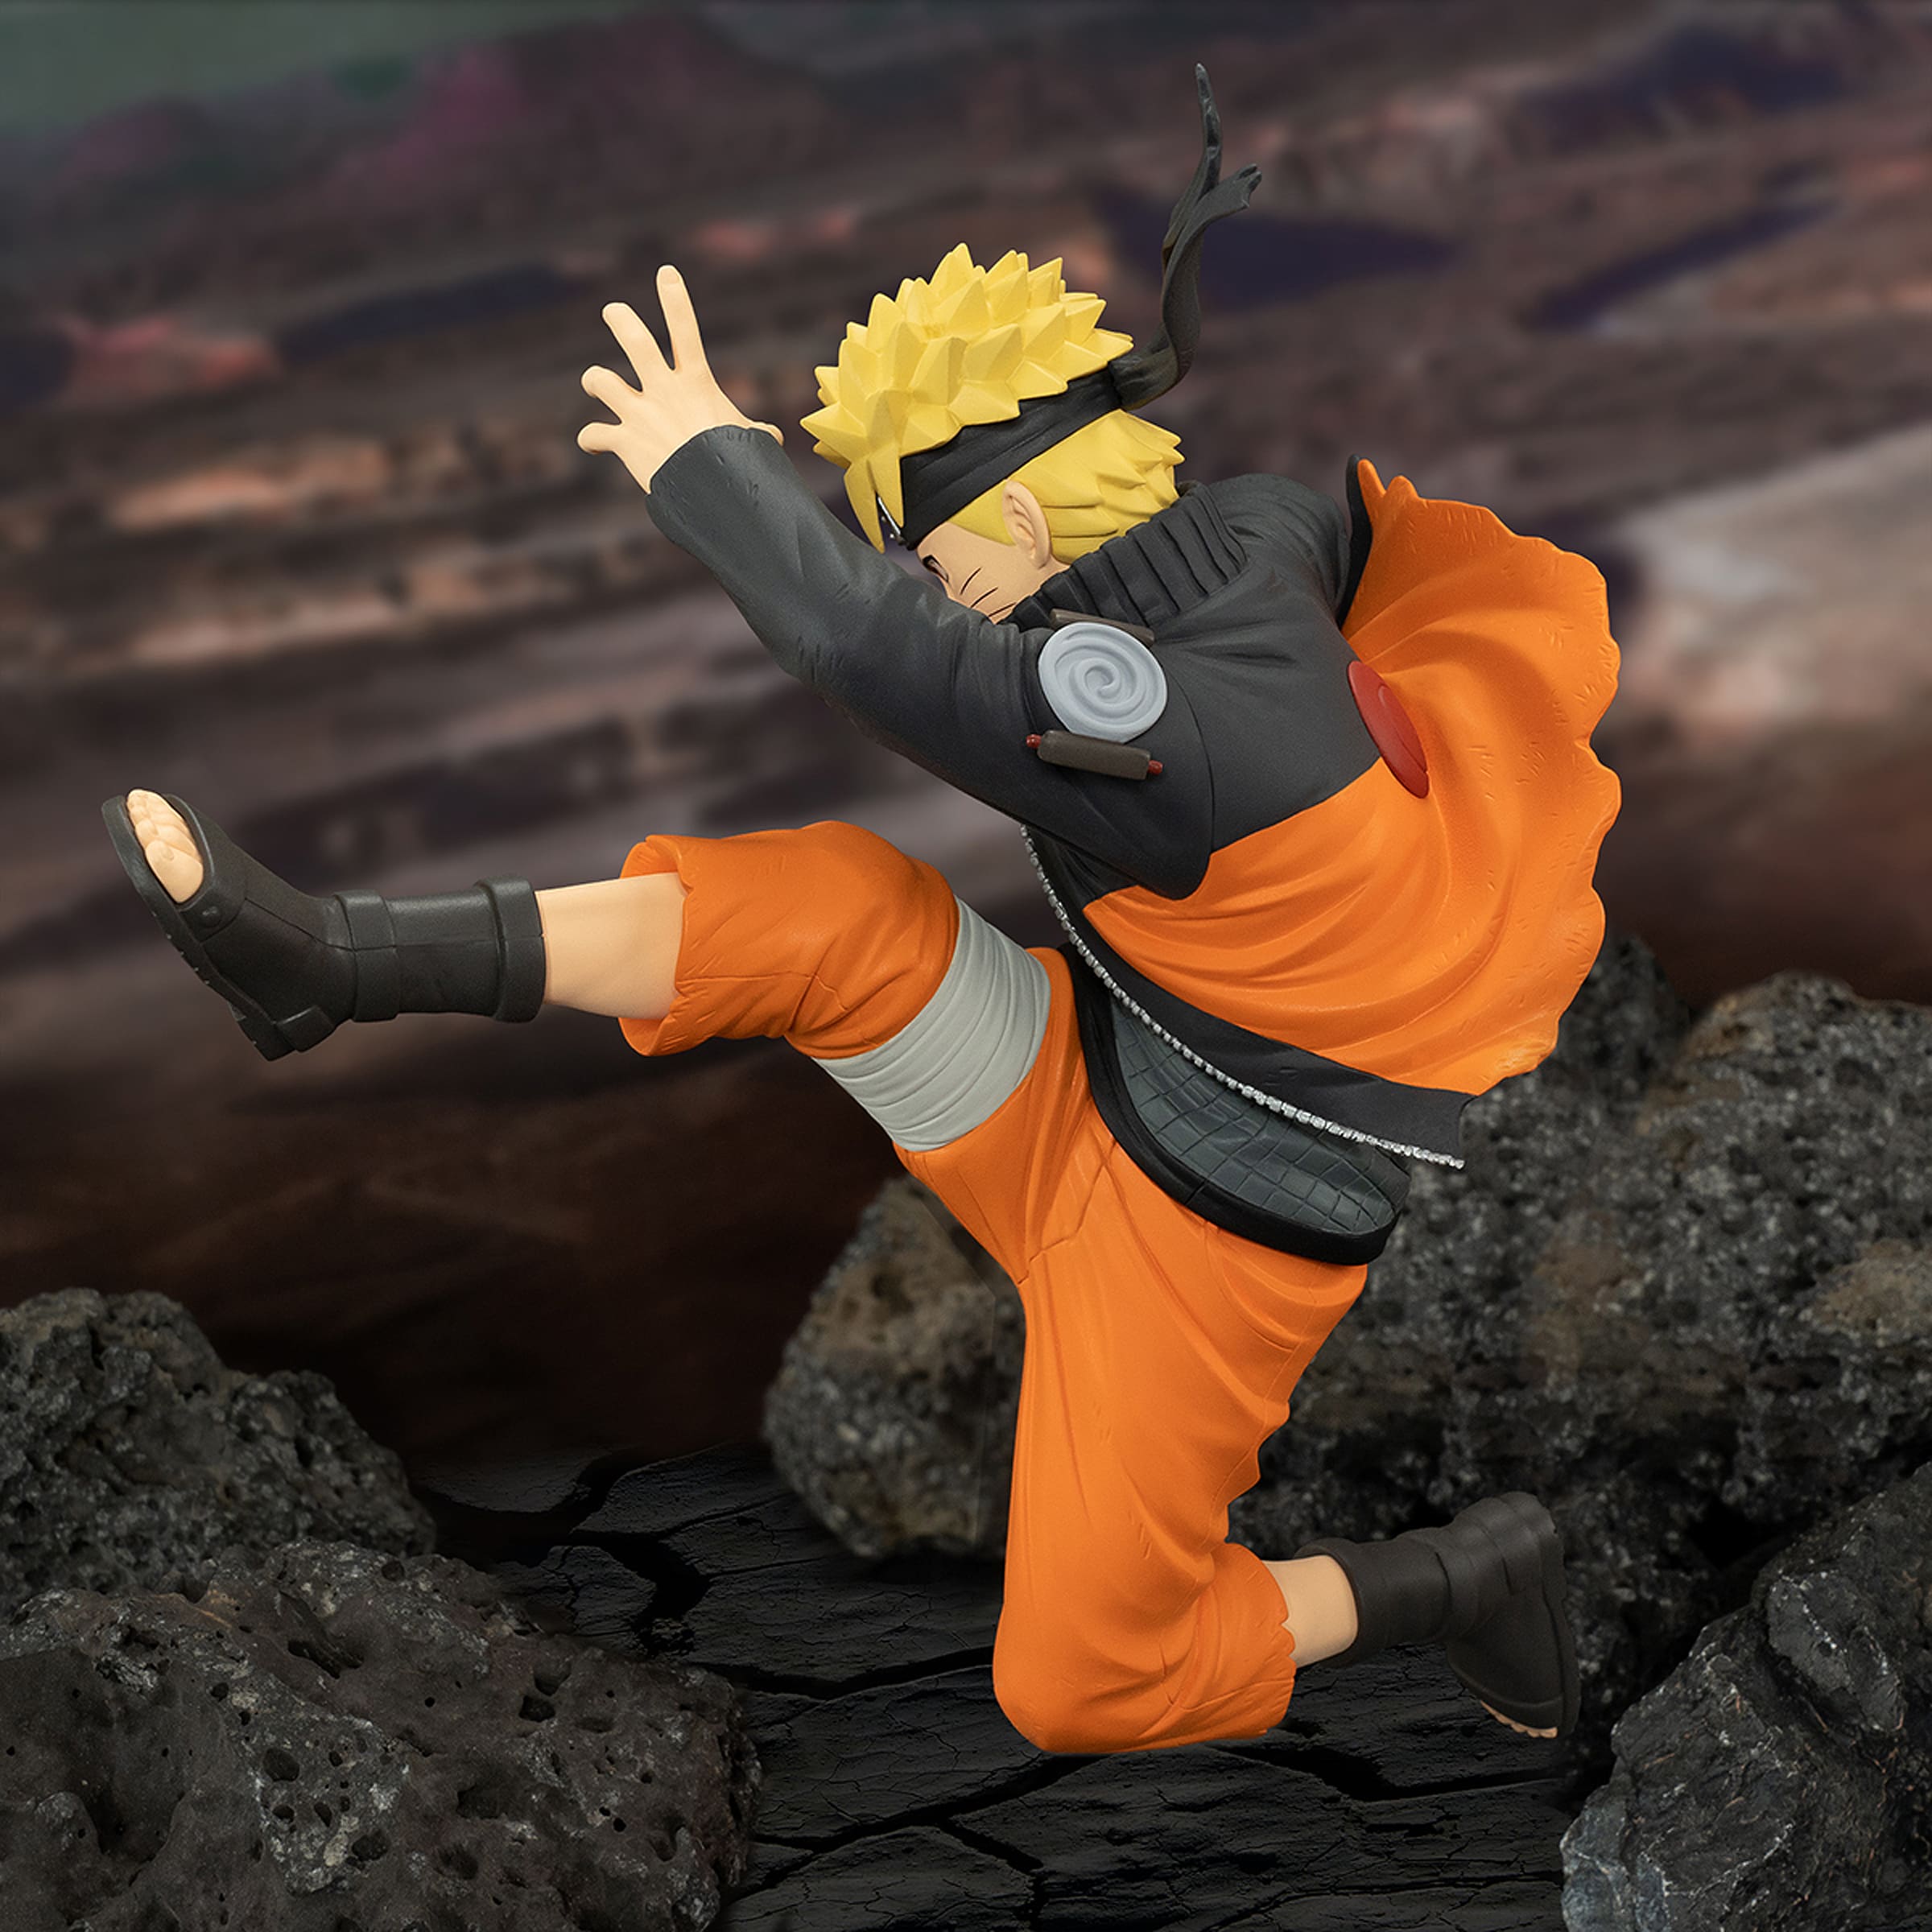 Banpresto Vibration Stars: Naruto Shippuden - Naruto Uzumaki IV